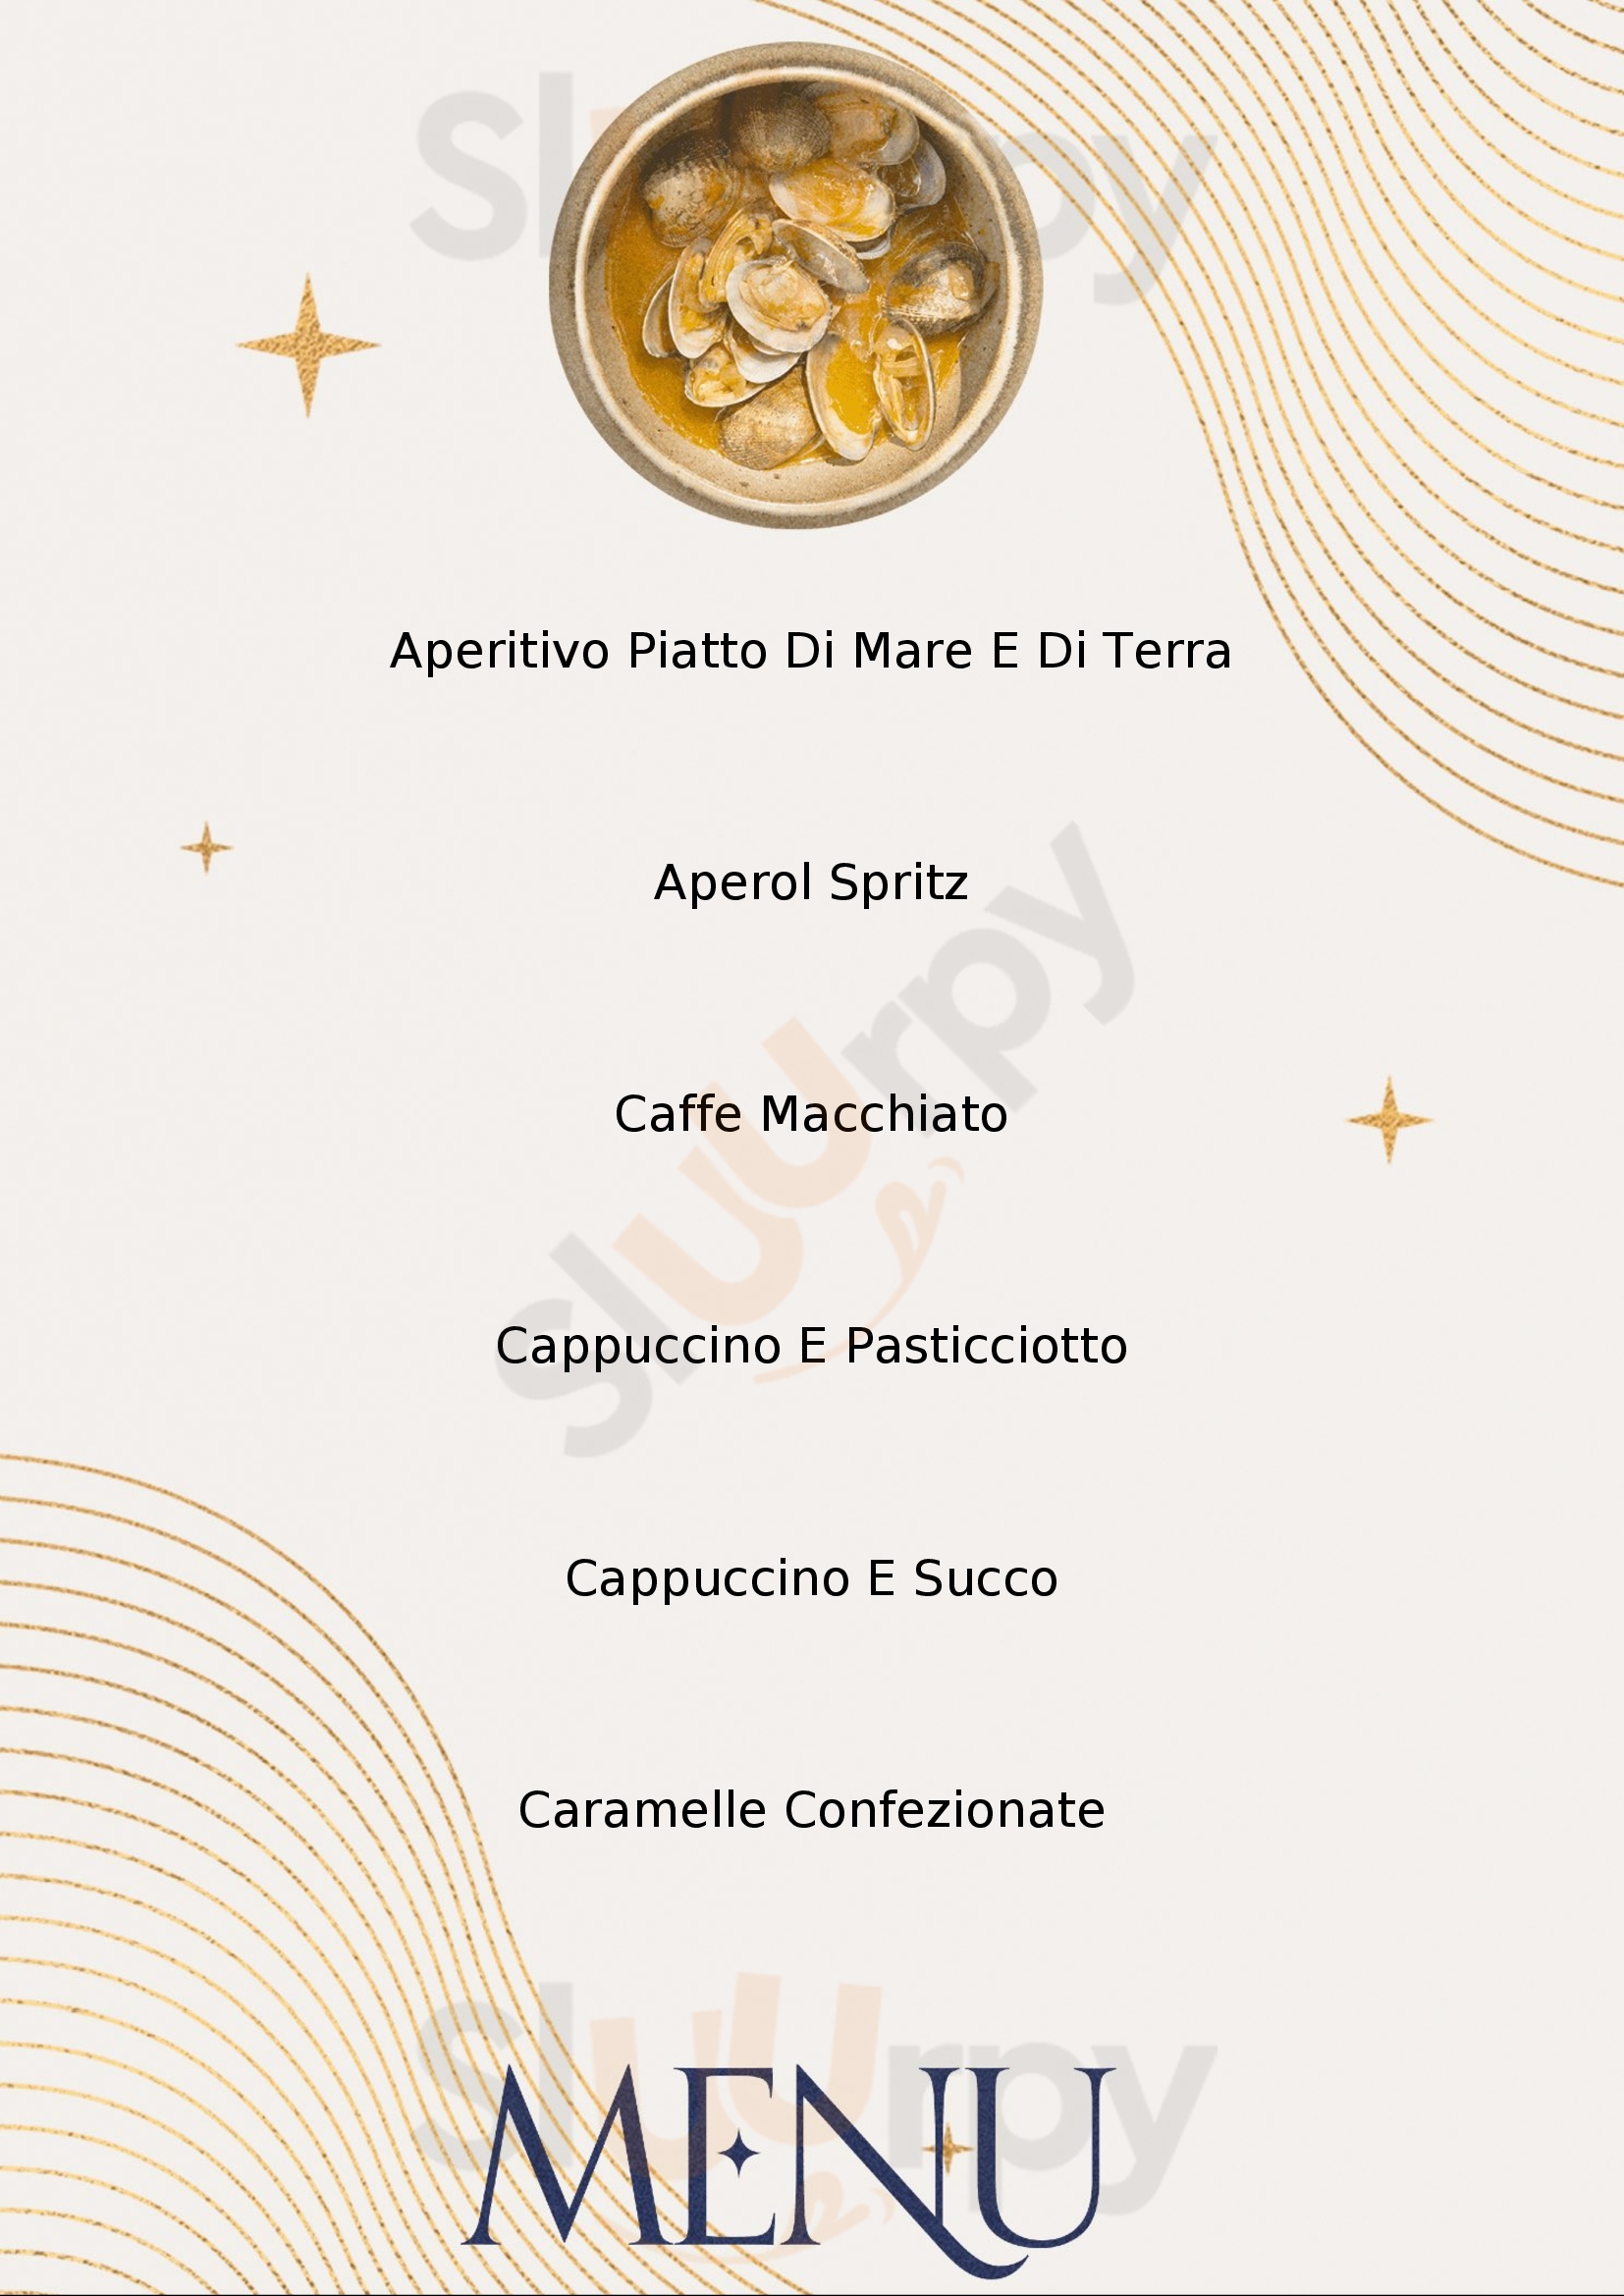 castrum caffe' Castrignano del Capo menù 1 pagina